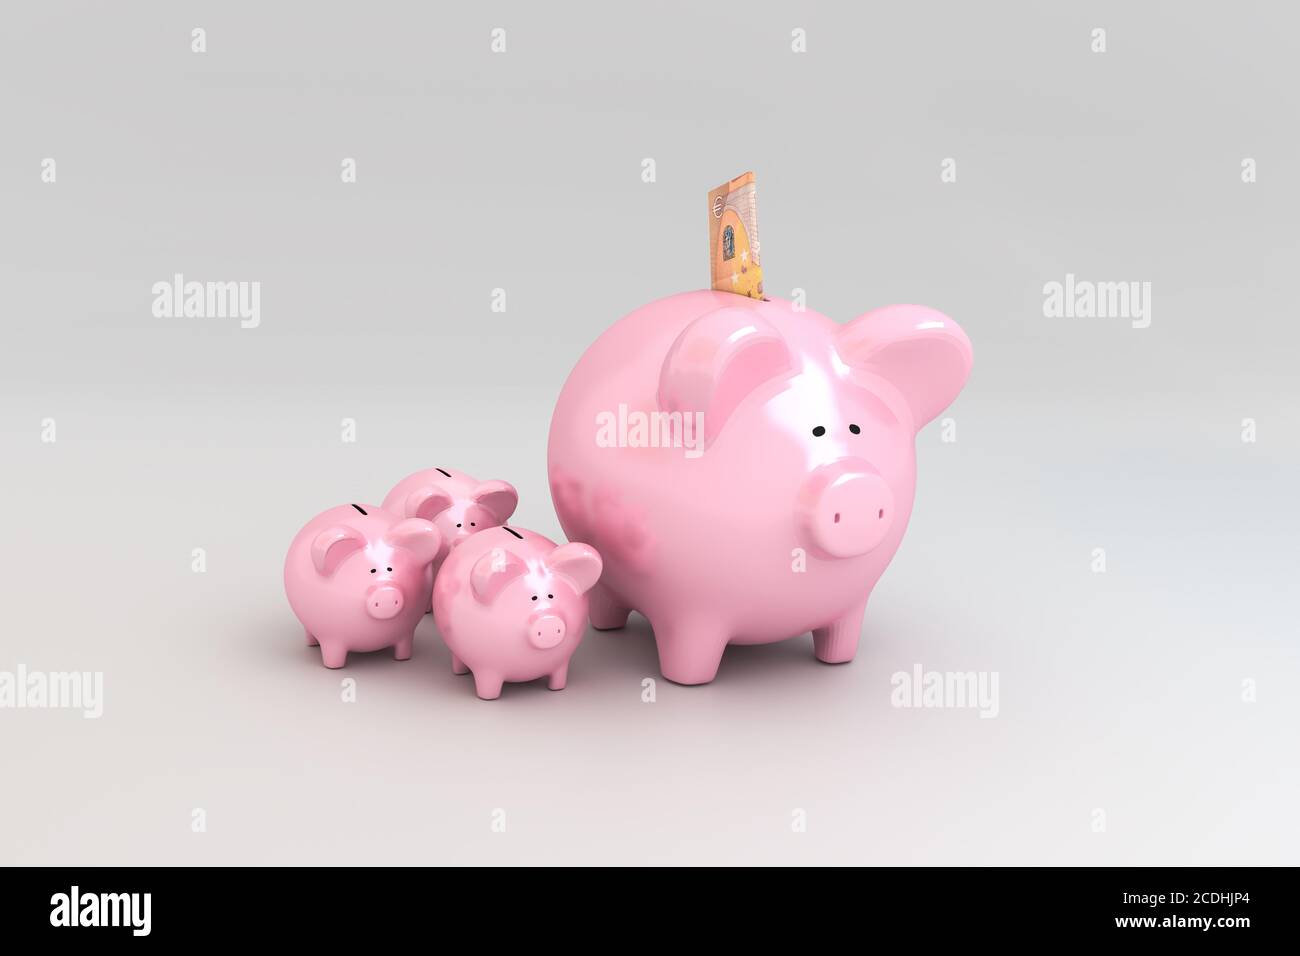 Concetto di Piggy Bank: Ottenere interesse sotto forma di piccole banche piggy. Una banconota da 50 euro ripiegata in apertura. Foto Stock